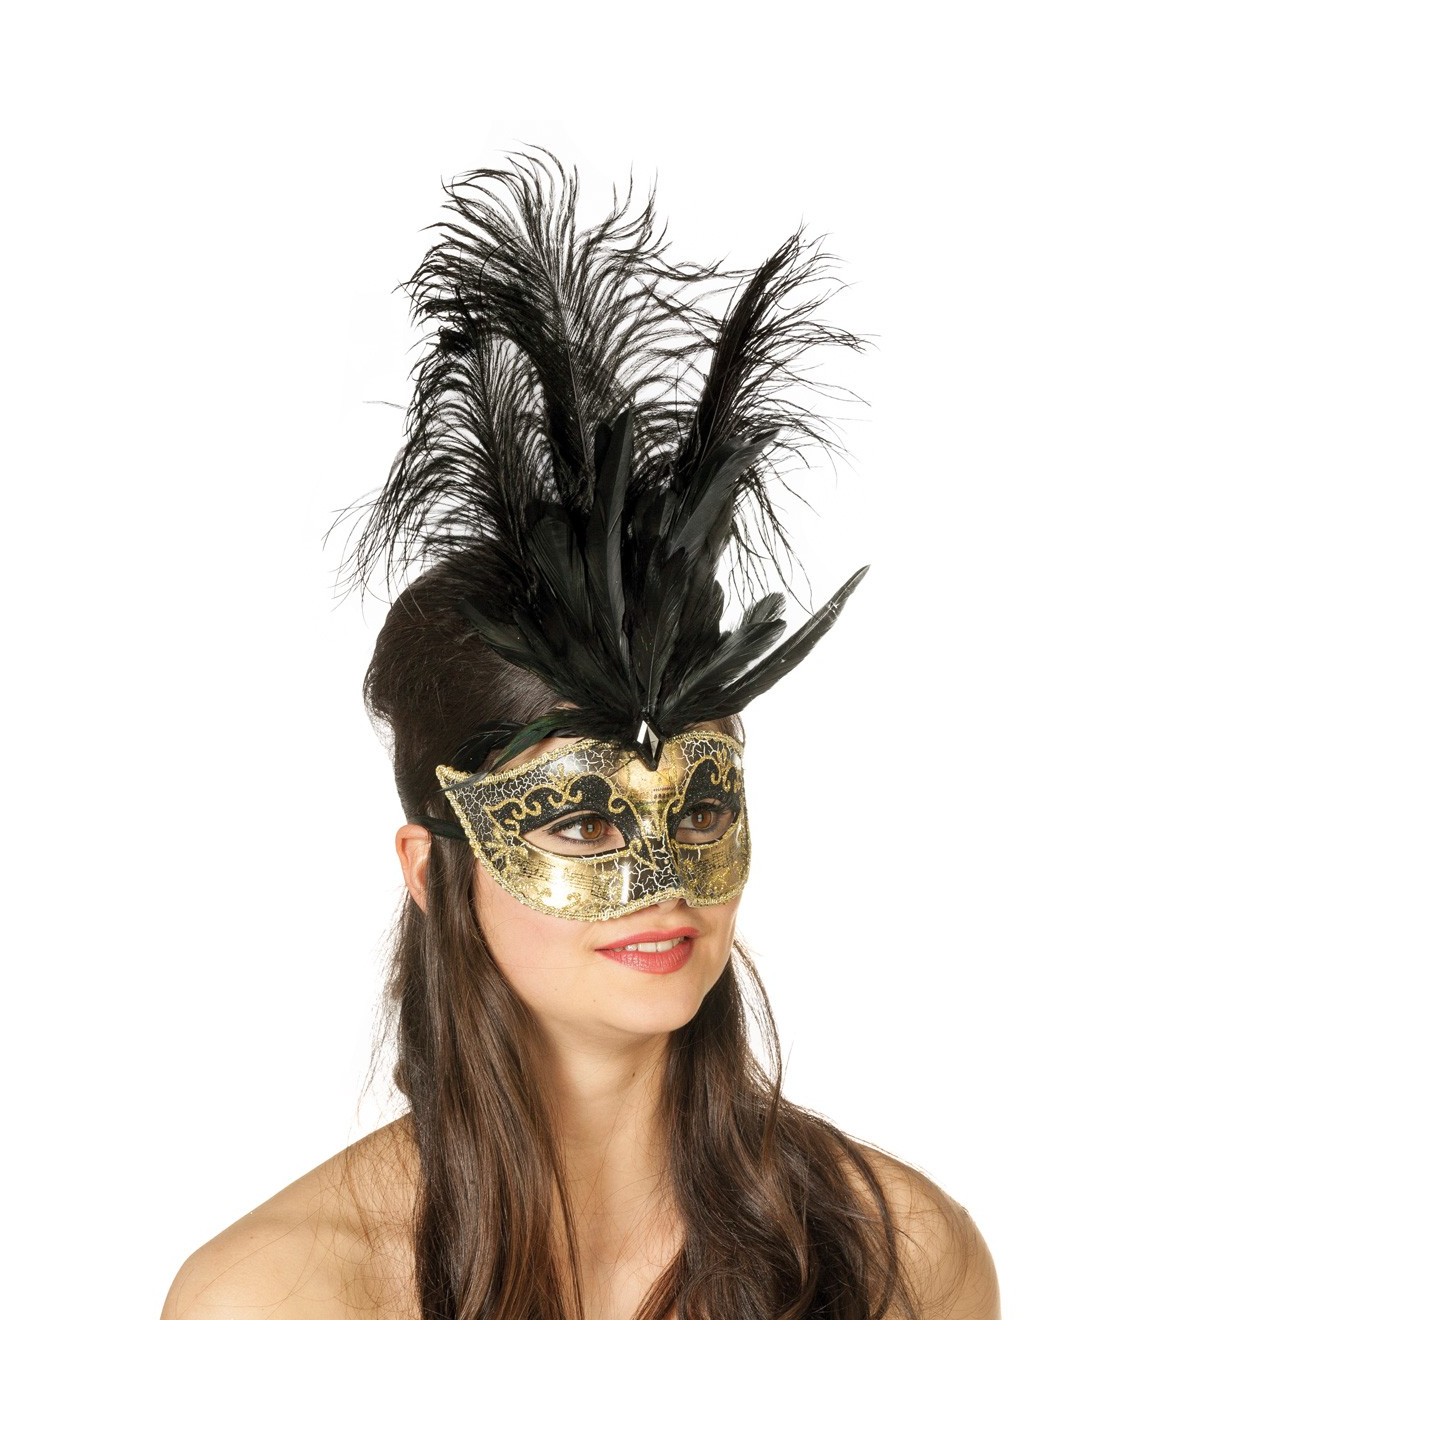 Beven genetisch handelaar Venetiaans masker muzieknoot veer zwart|Jokershop.be -Carnavalsmaskers